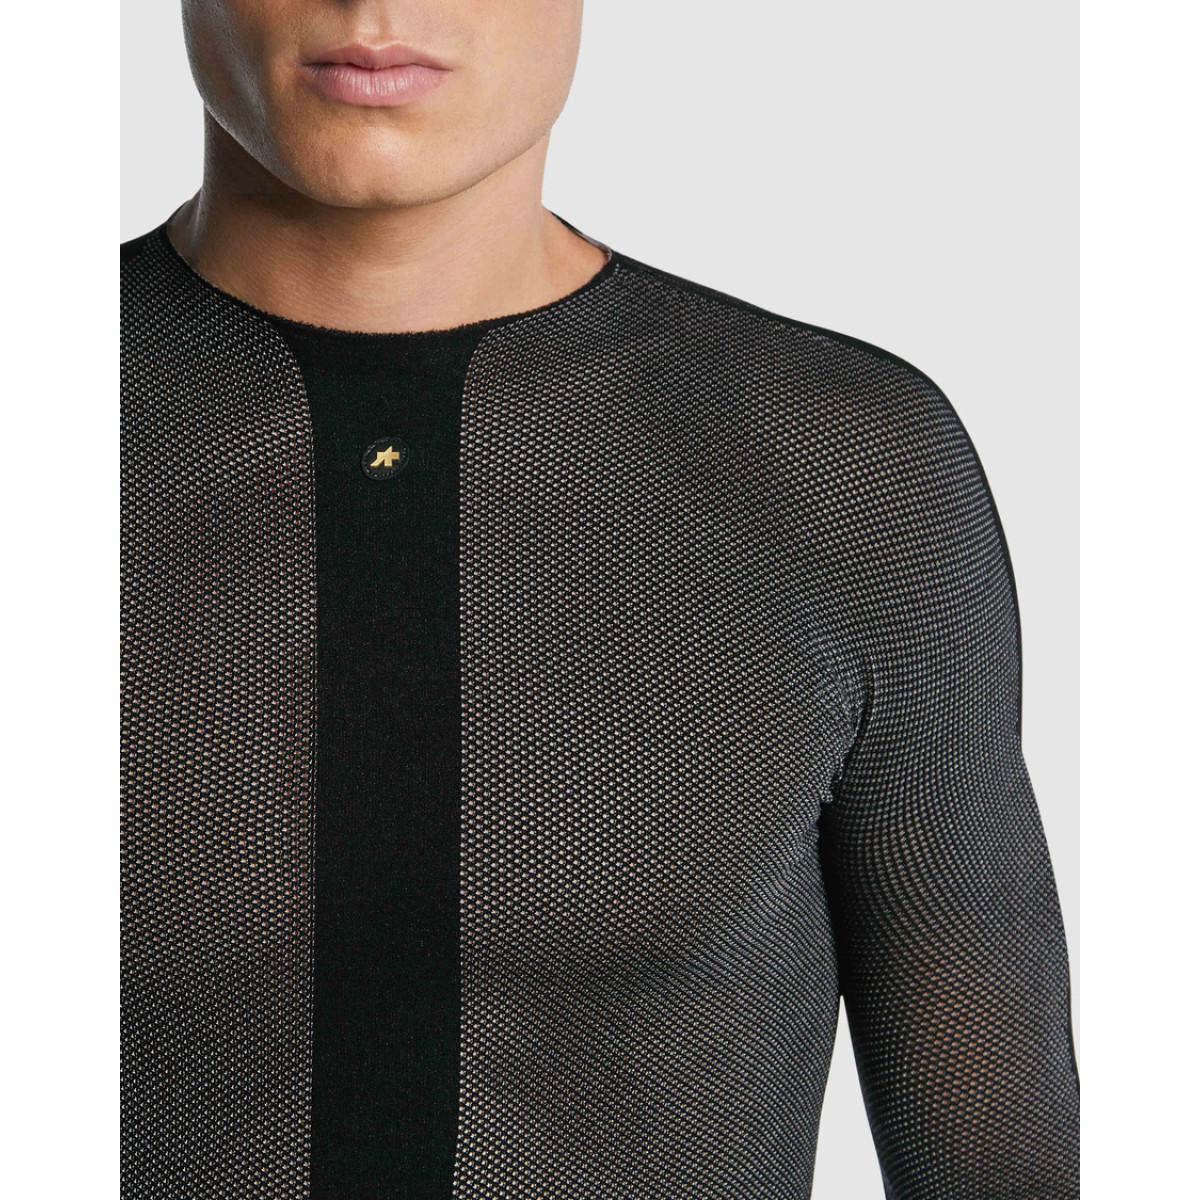 Assos GTO Spring Fall LS DermaSensor vyriški termo marškinėliai / blackSeries